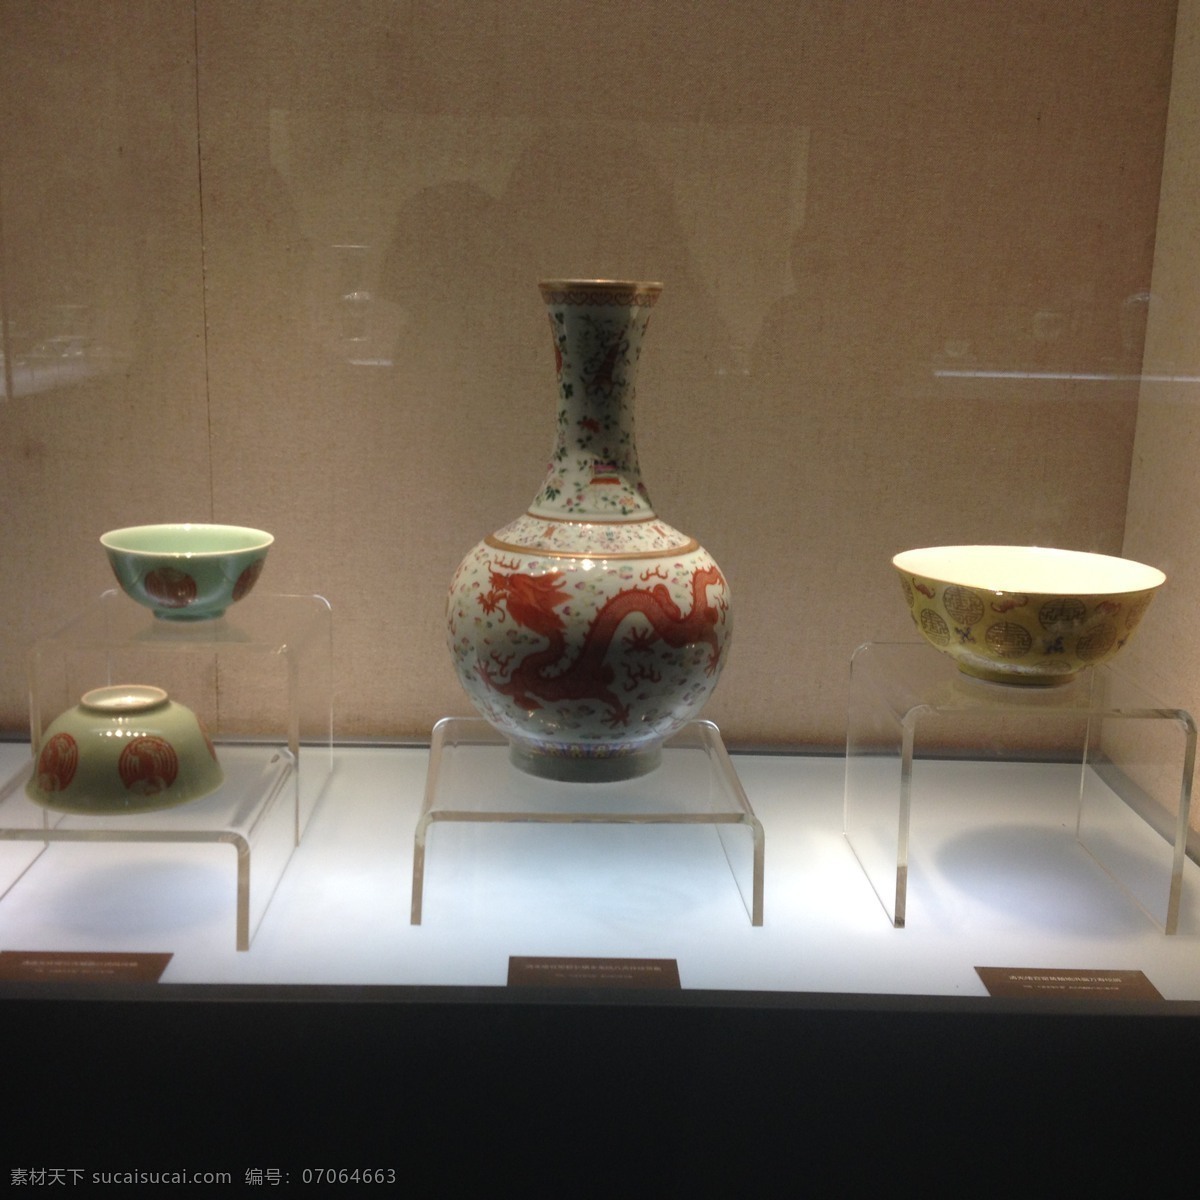 出土文物 彩绘 陶瓷 博物馆 传统文化 文化艺术 文物 展览 出土 器物 展出 彩绘器物 装饰素材 展示设计